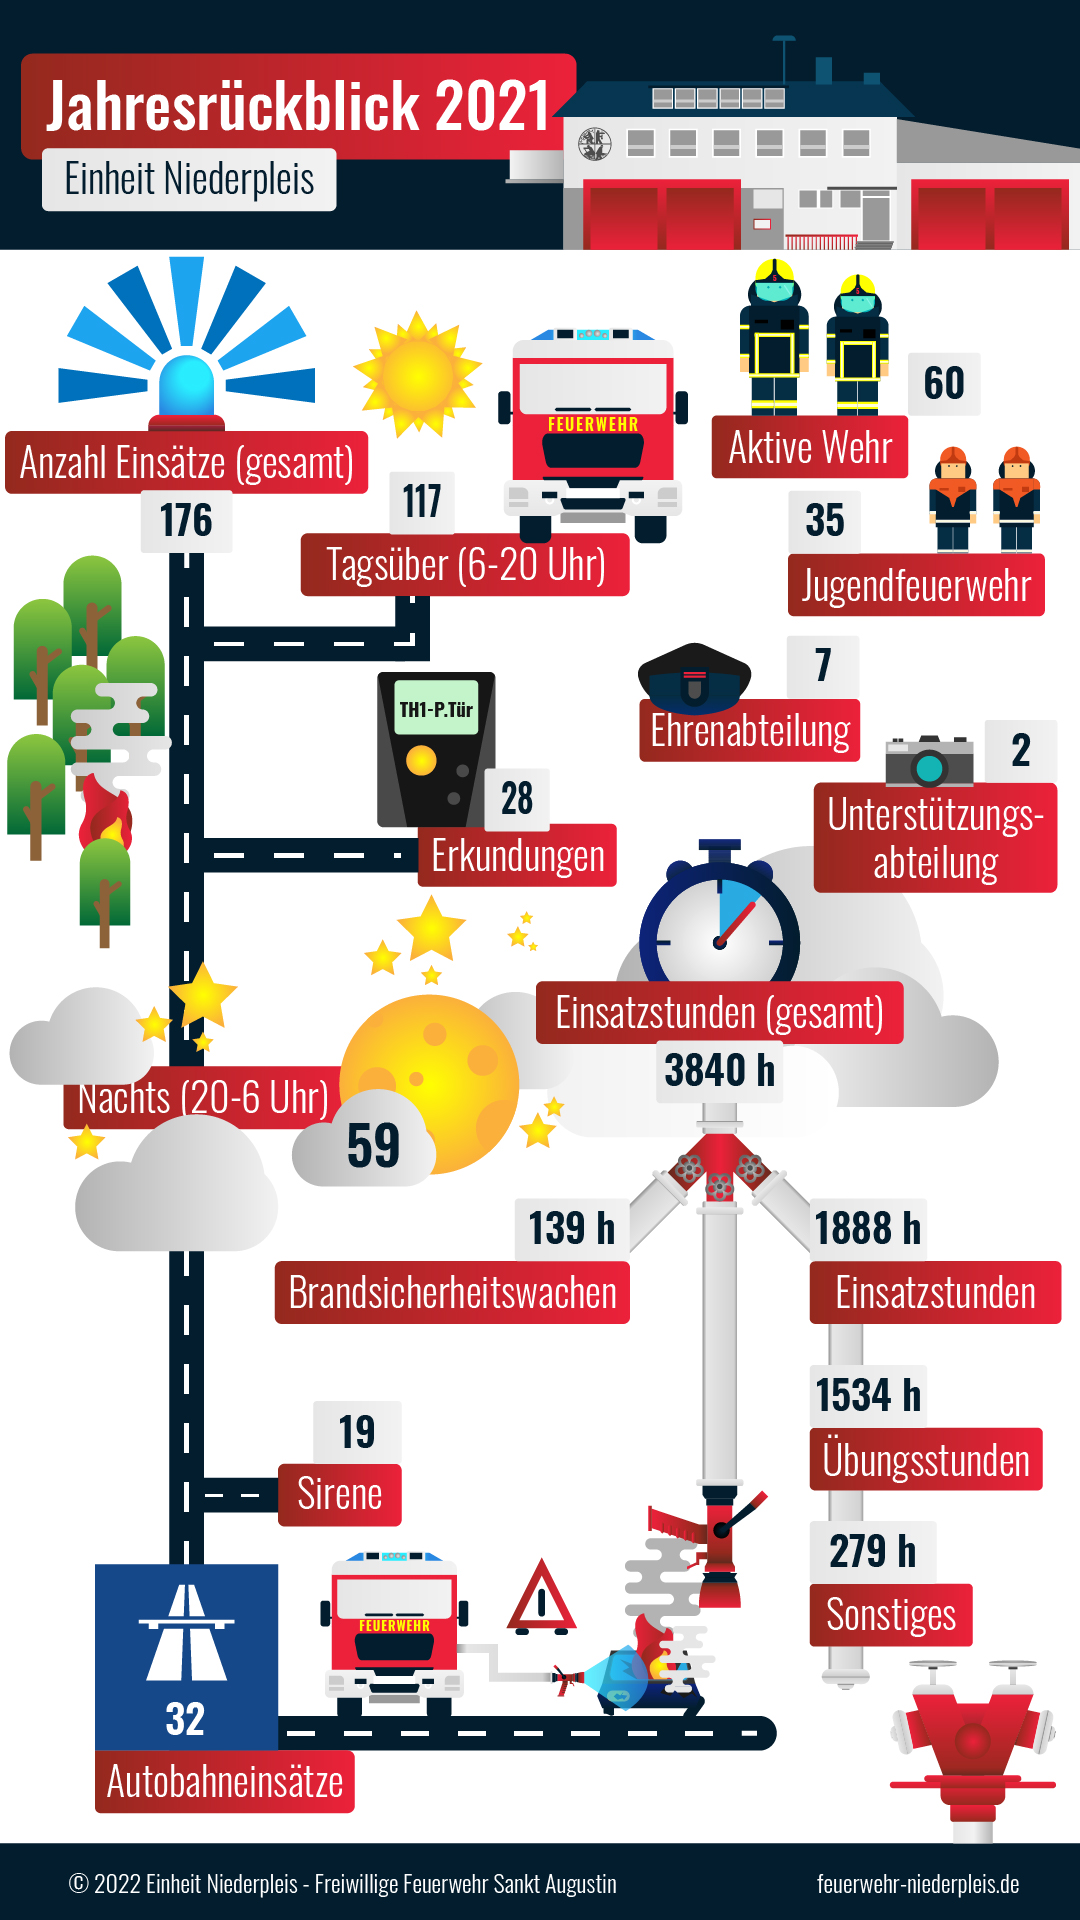 Zu sehen ist eine Infografik mit verschiedenen Feuerwehrillustrationen. Sie zeigen die verschiedenen Einsatzzahlen der Einheit Niederpleis im Jahr 2021